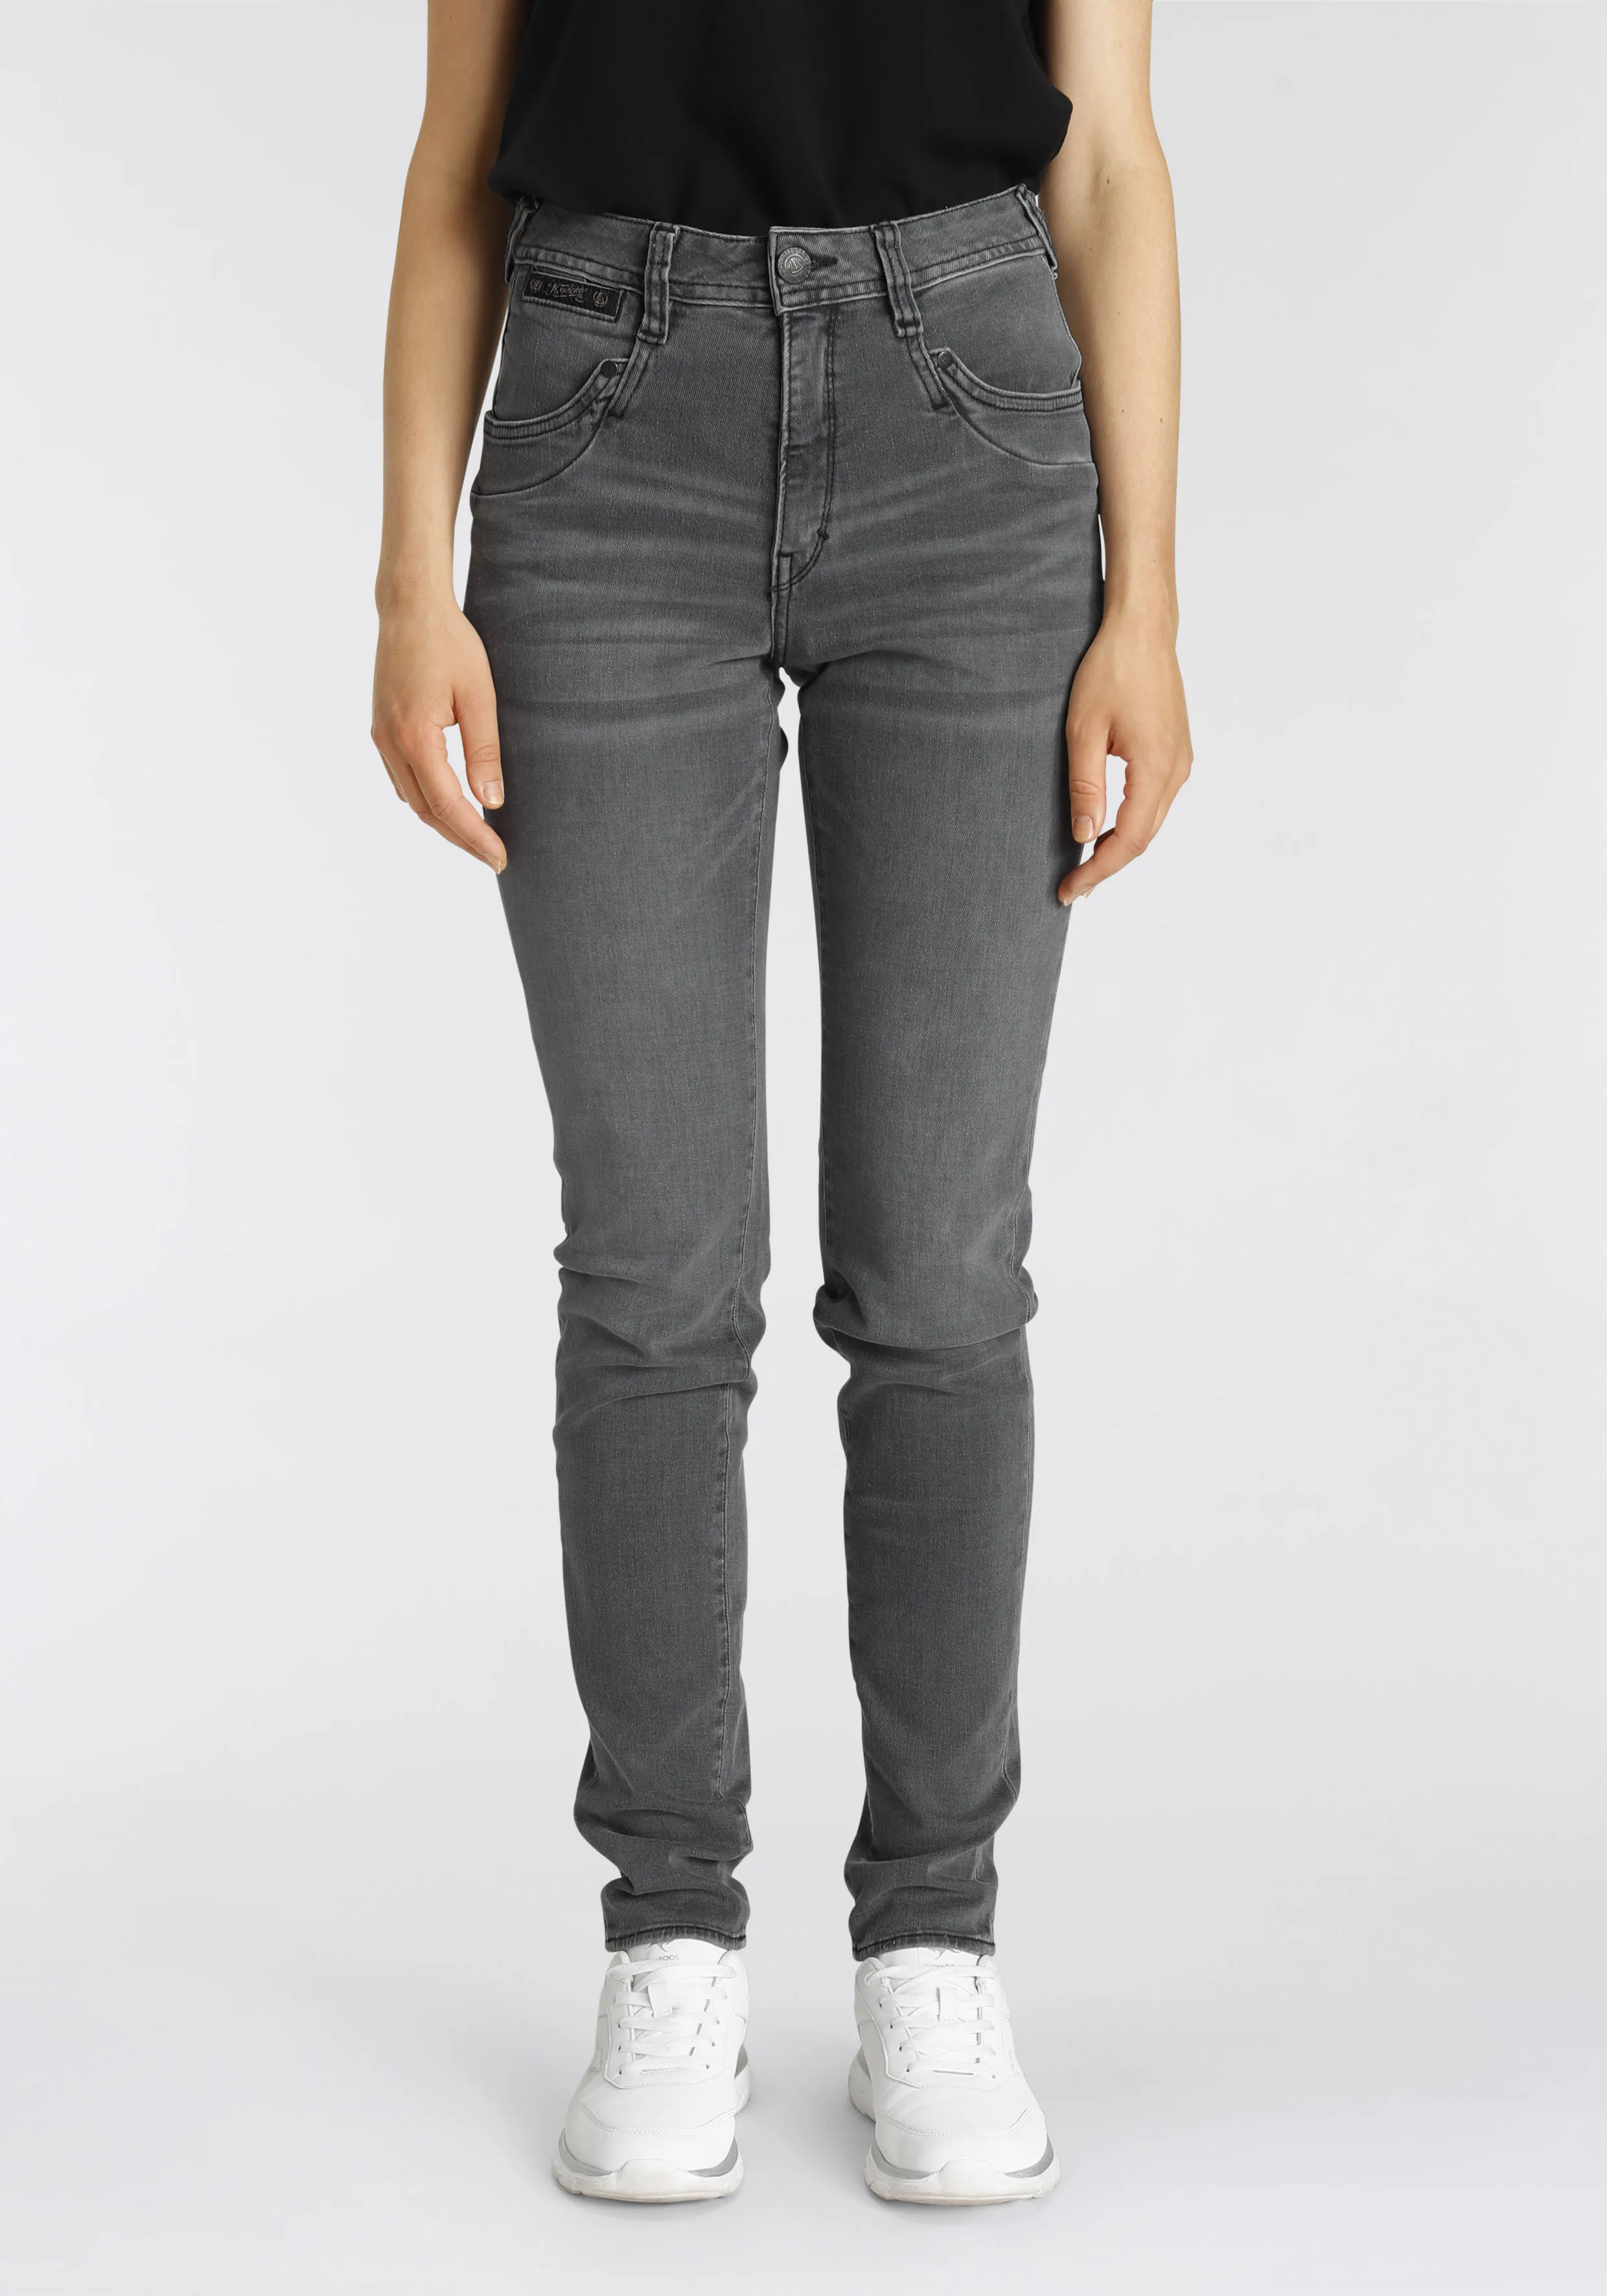 High-waist-Jeans HERRLICHER "PIPER HI SLIM ORGANIC DENIM CASHMERE TOUCH" Gr. 27, Länge 30, grau (o x y) Damen Jeans Röhrenjeans umweltfreundlich dank Kitotex Technologie